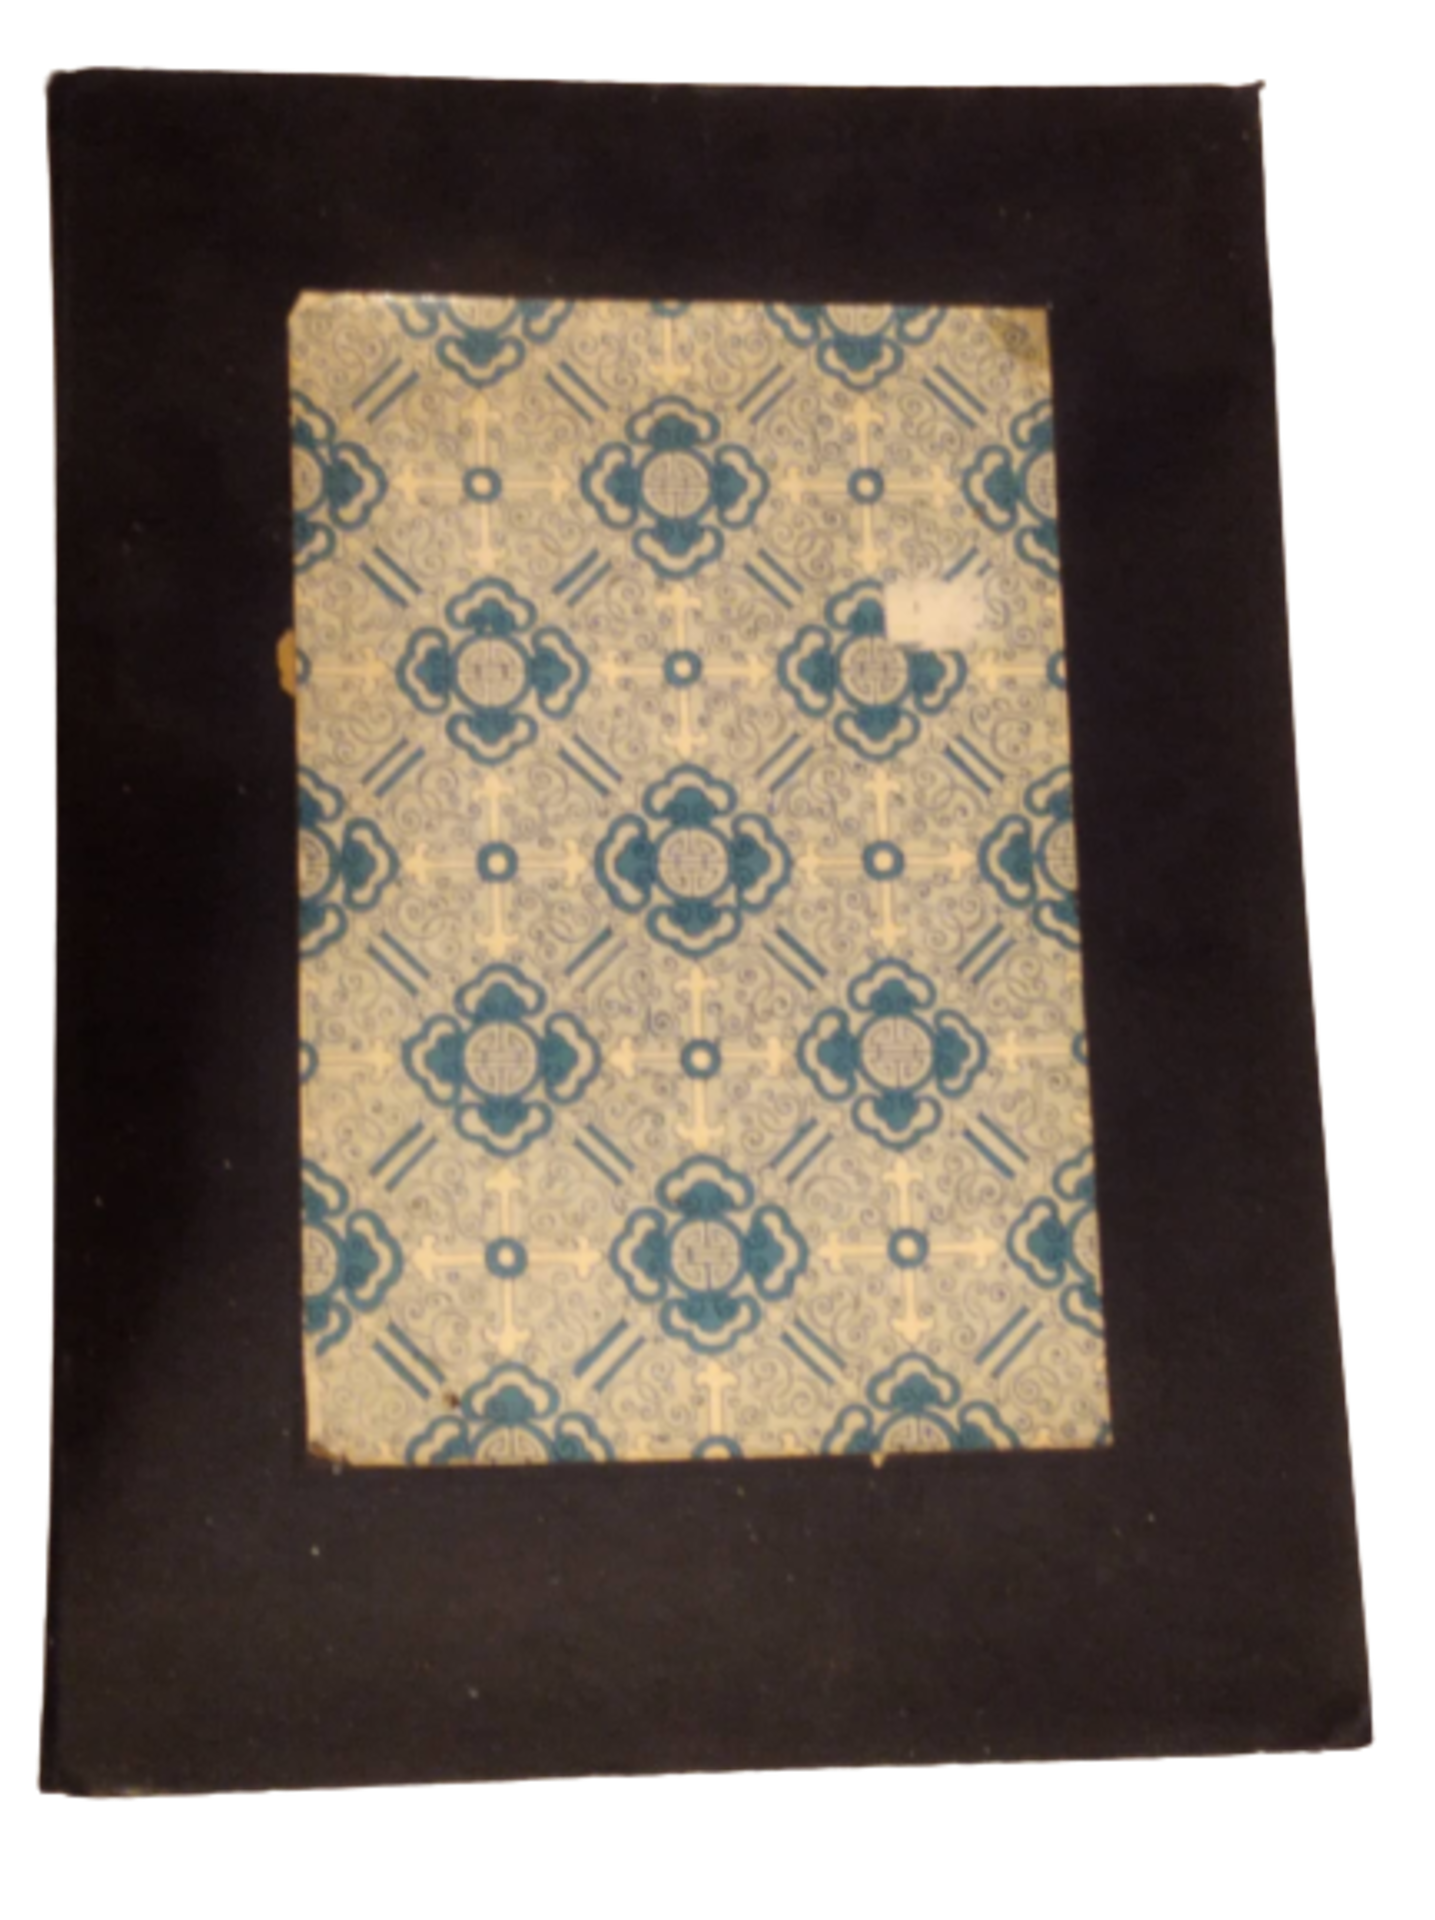 Musterbuch | Kasachstanische Teppiche / Wohneinrichtung